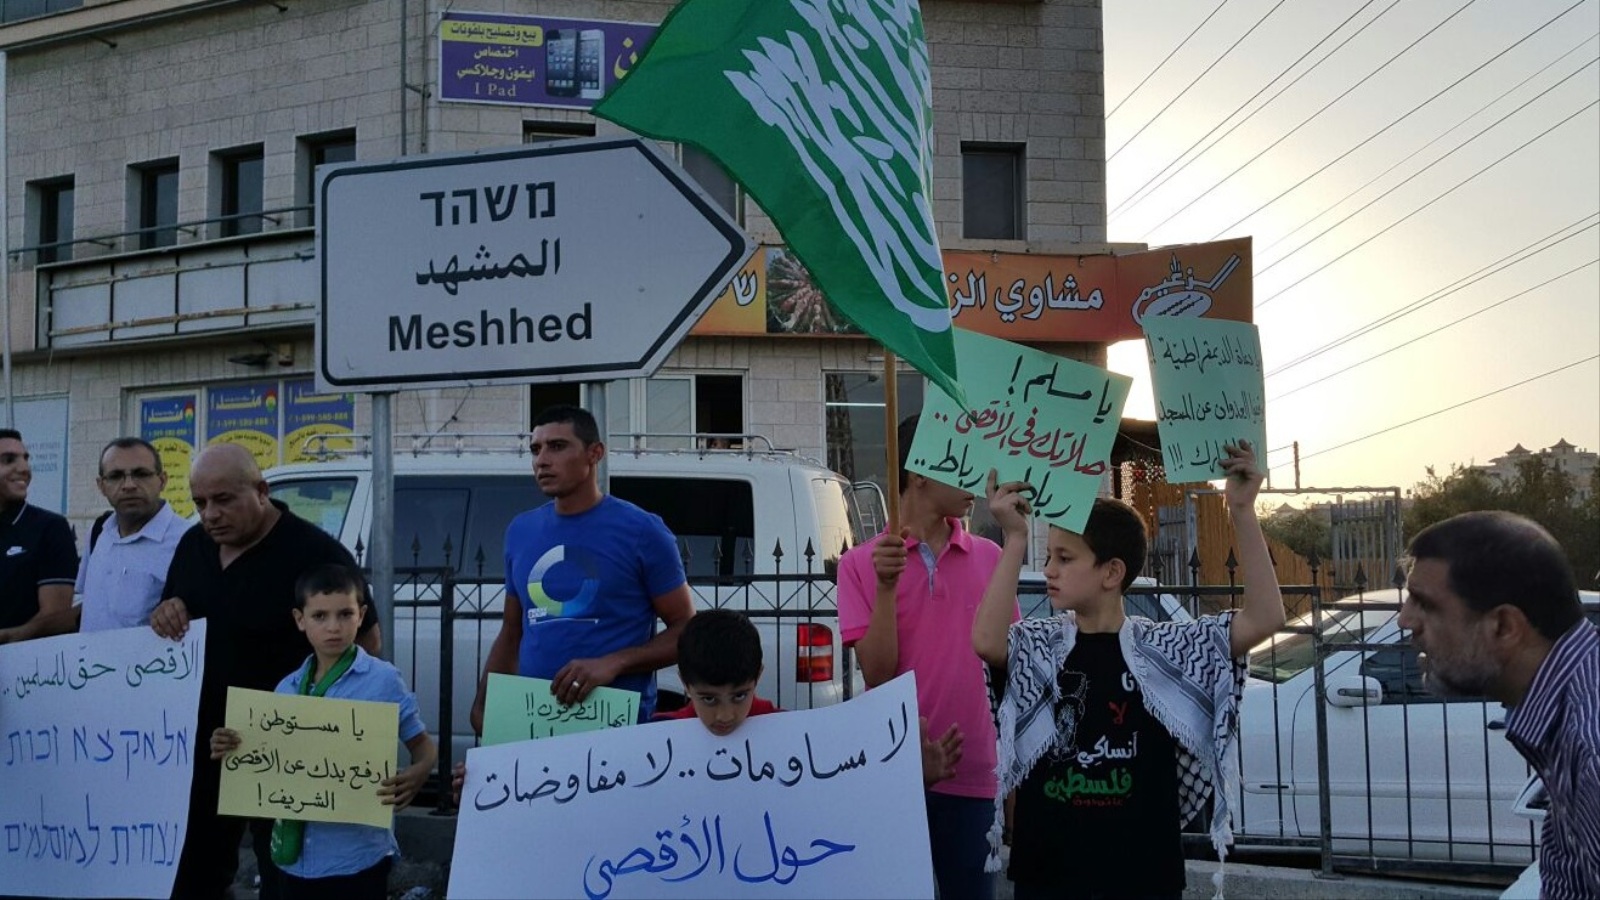 ‪‬ فلسطينيو 48 يرفضون أي مفاوضات والمساومة على القدس والأقصى(الجزيرة)